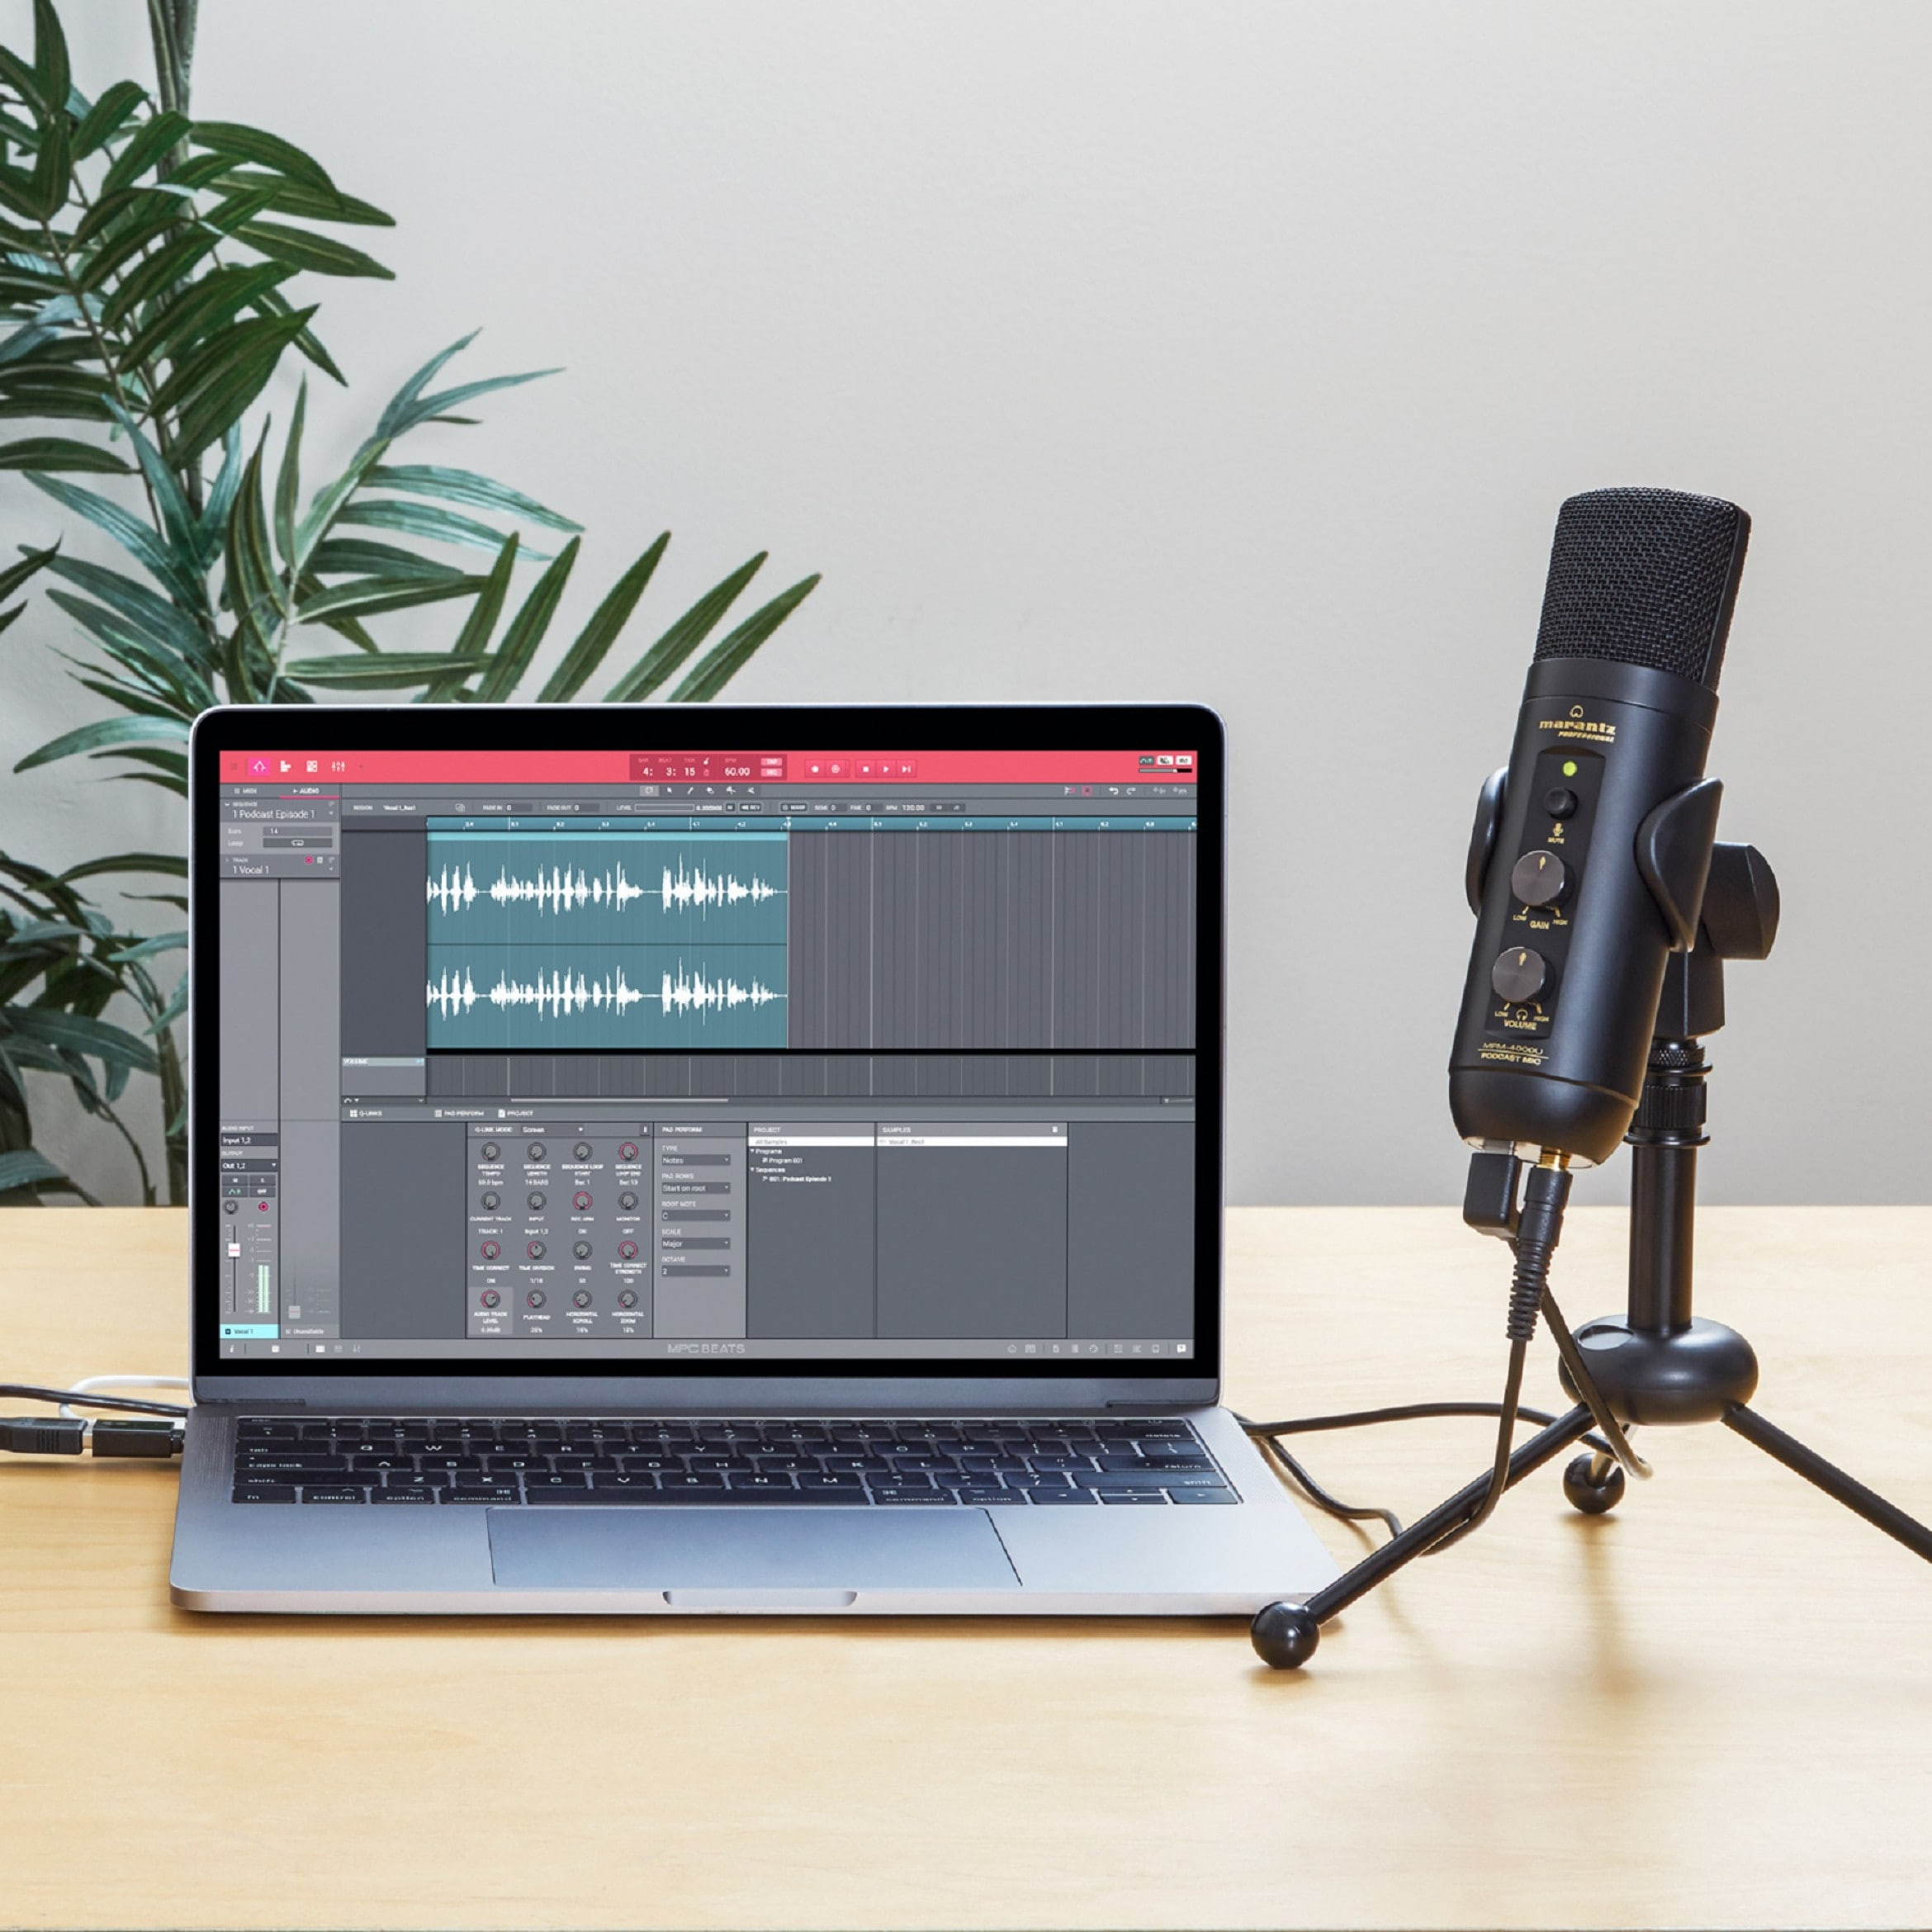 PREMIERA: Marantz Professional przedstawia nowy mikrofon do nagrywania podcastów - MPM-4000U Podcast Mic